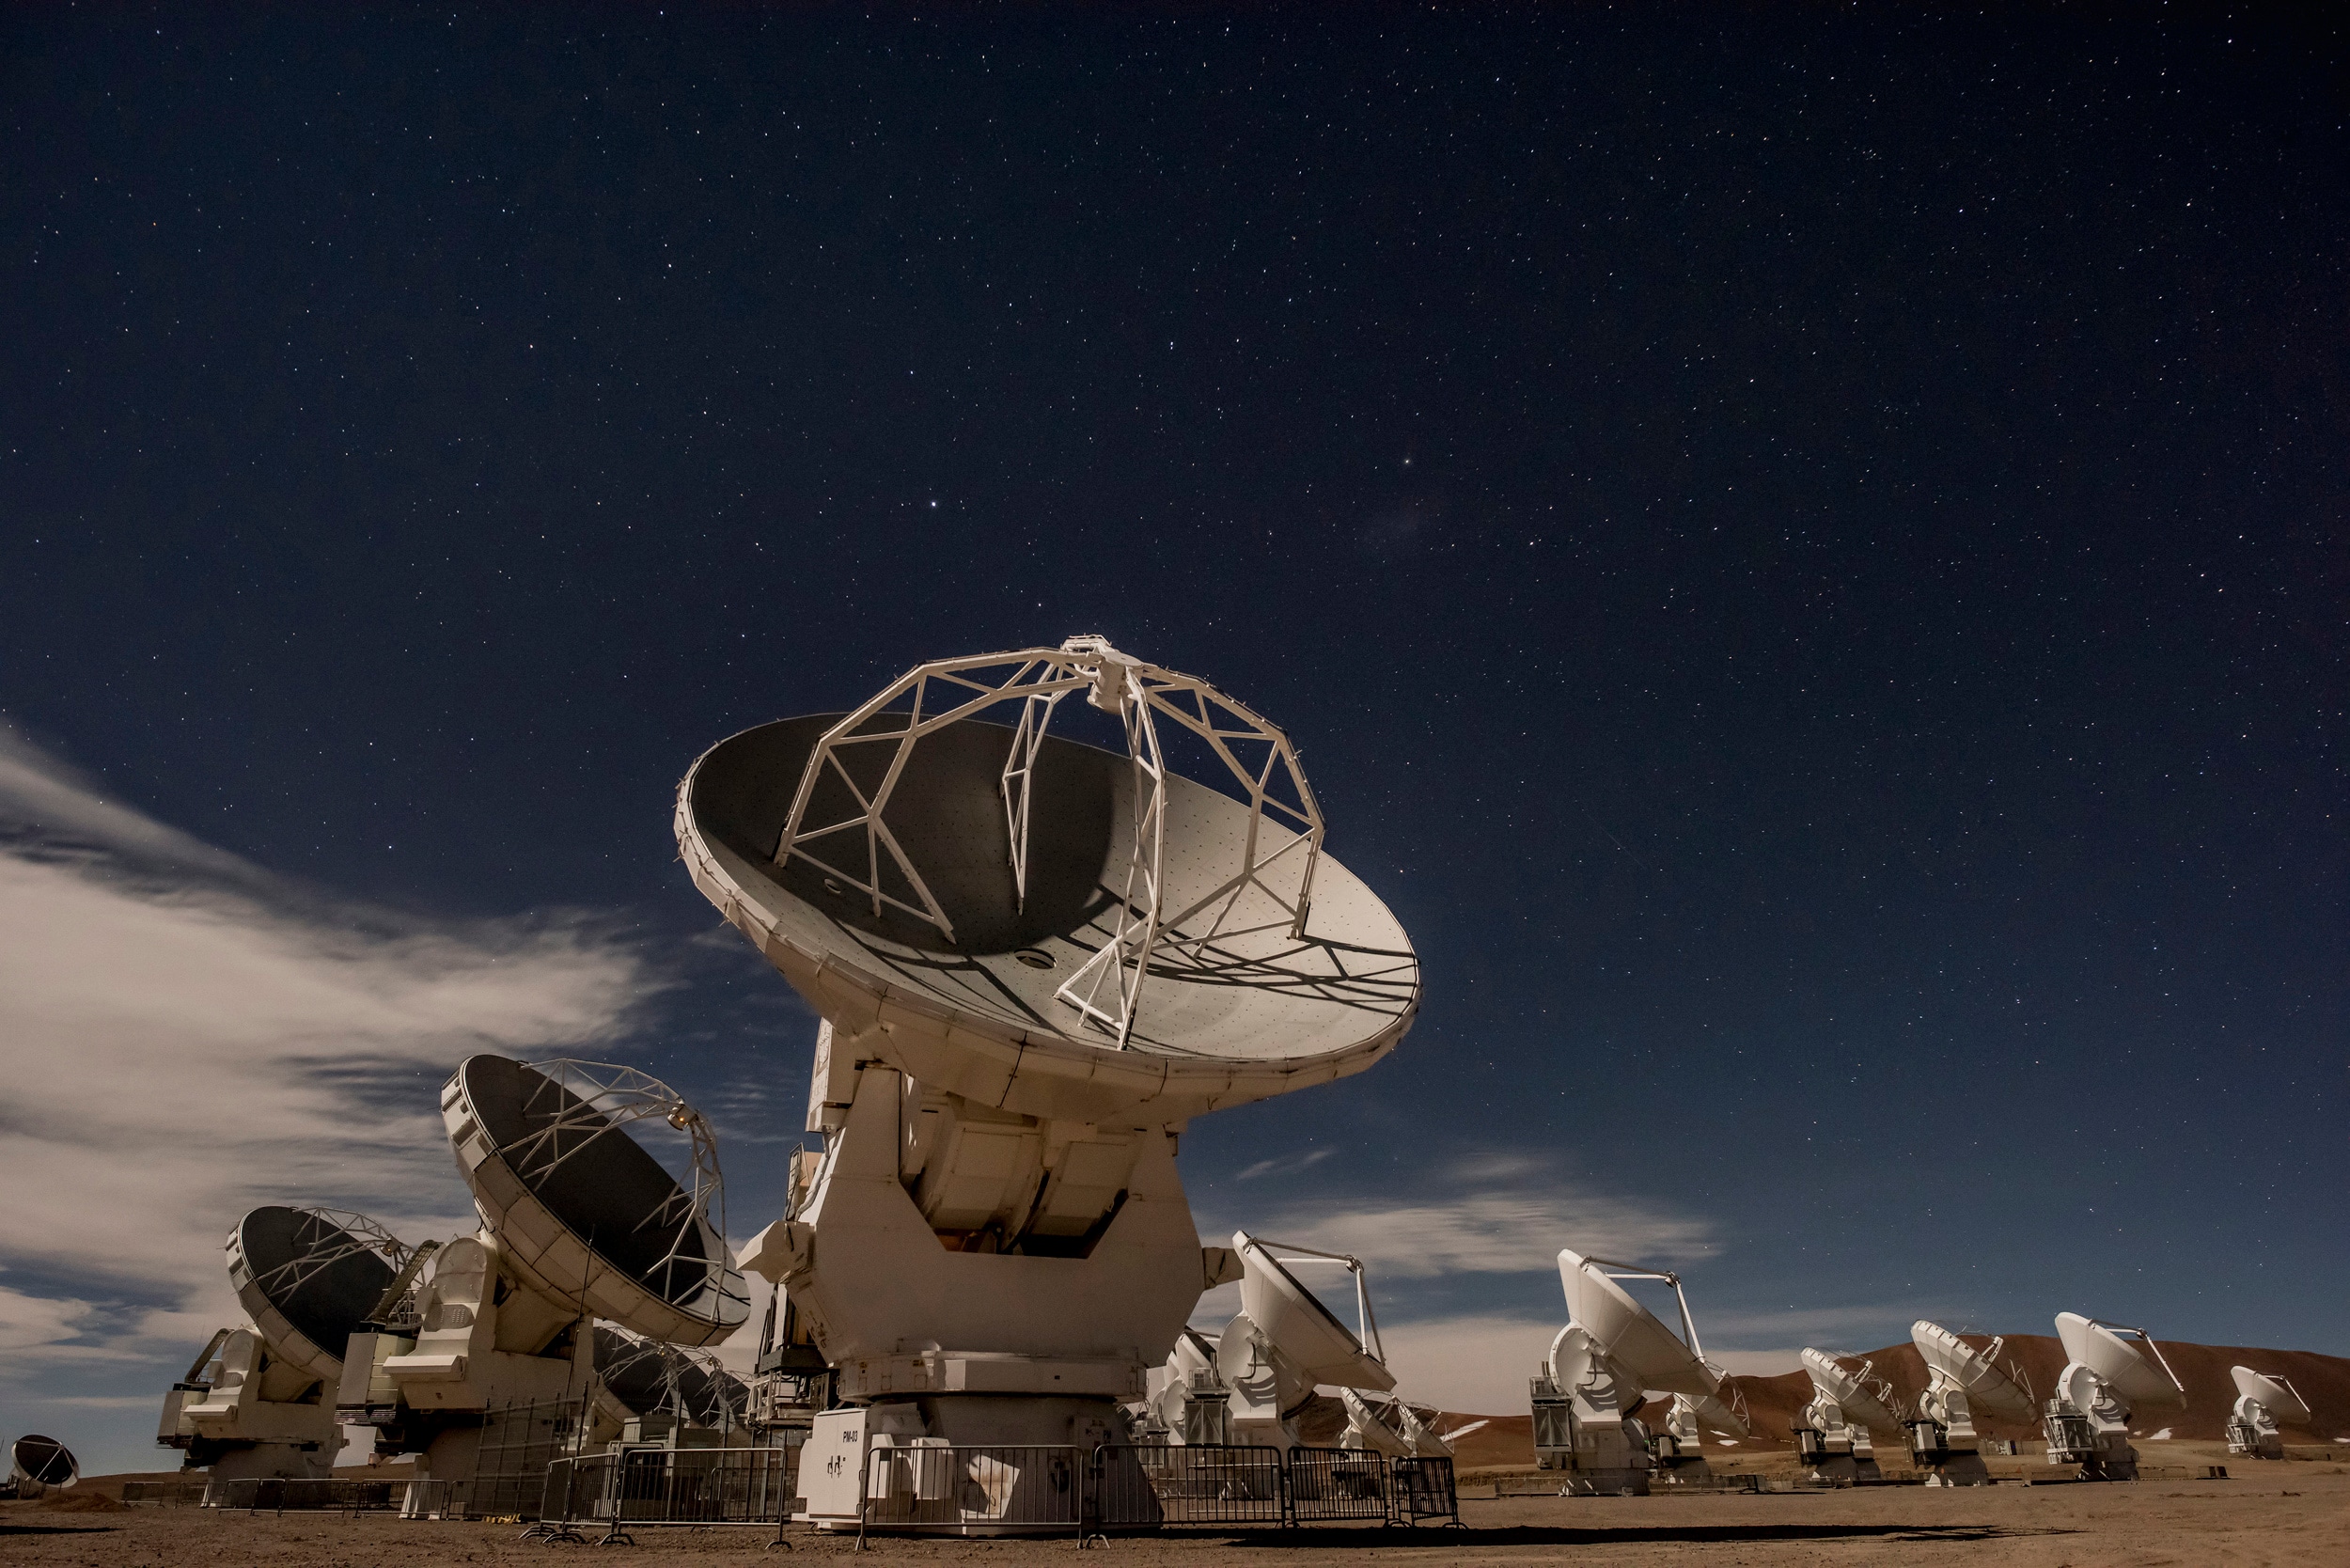 Alcune delle 66 antenne mobili di Atacama Large Millime Ter submillimeter Array ALMA nel deserto di Atacama in Cile.